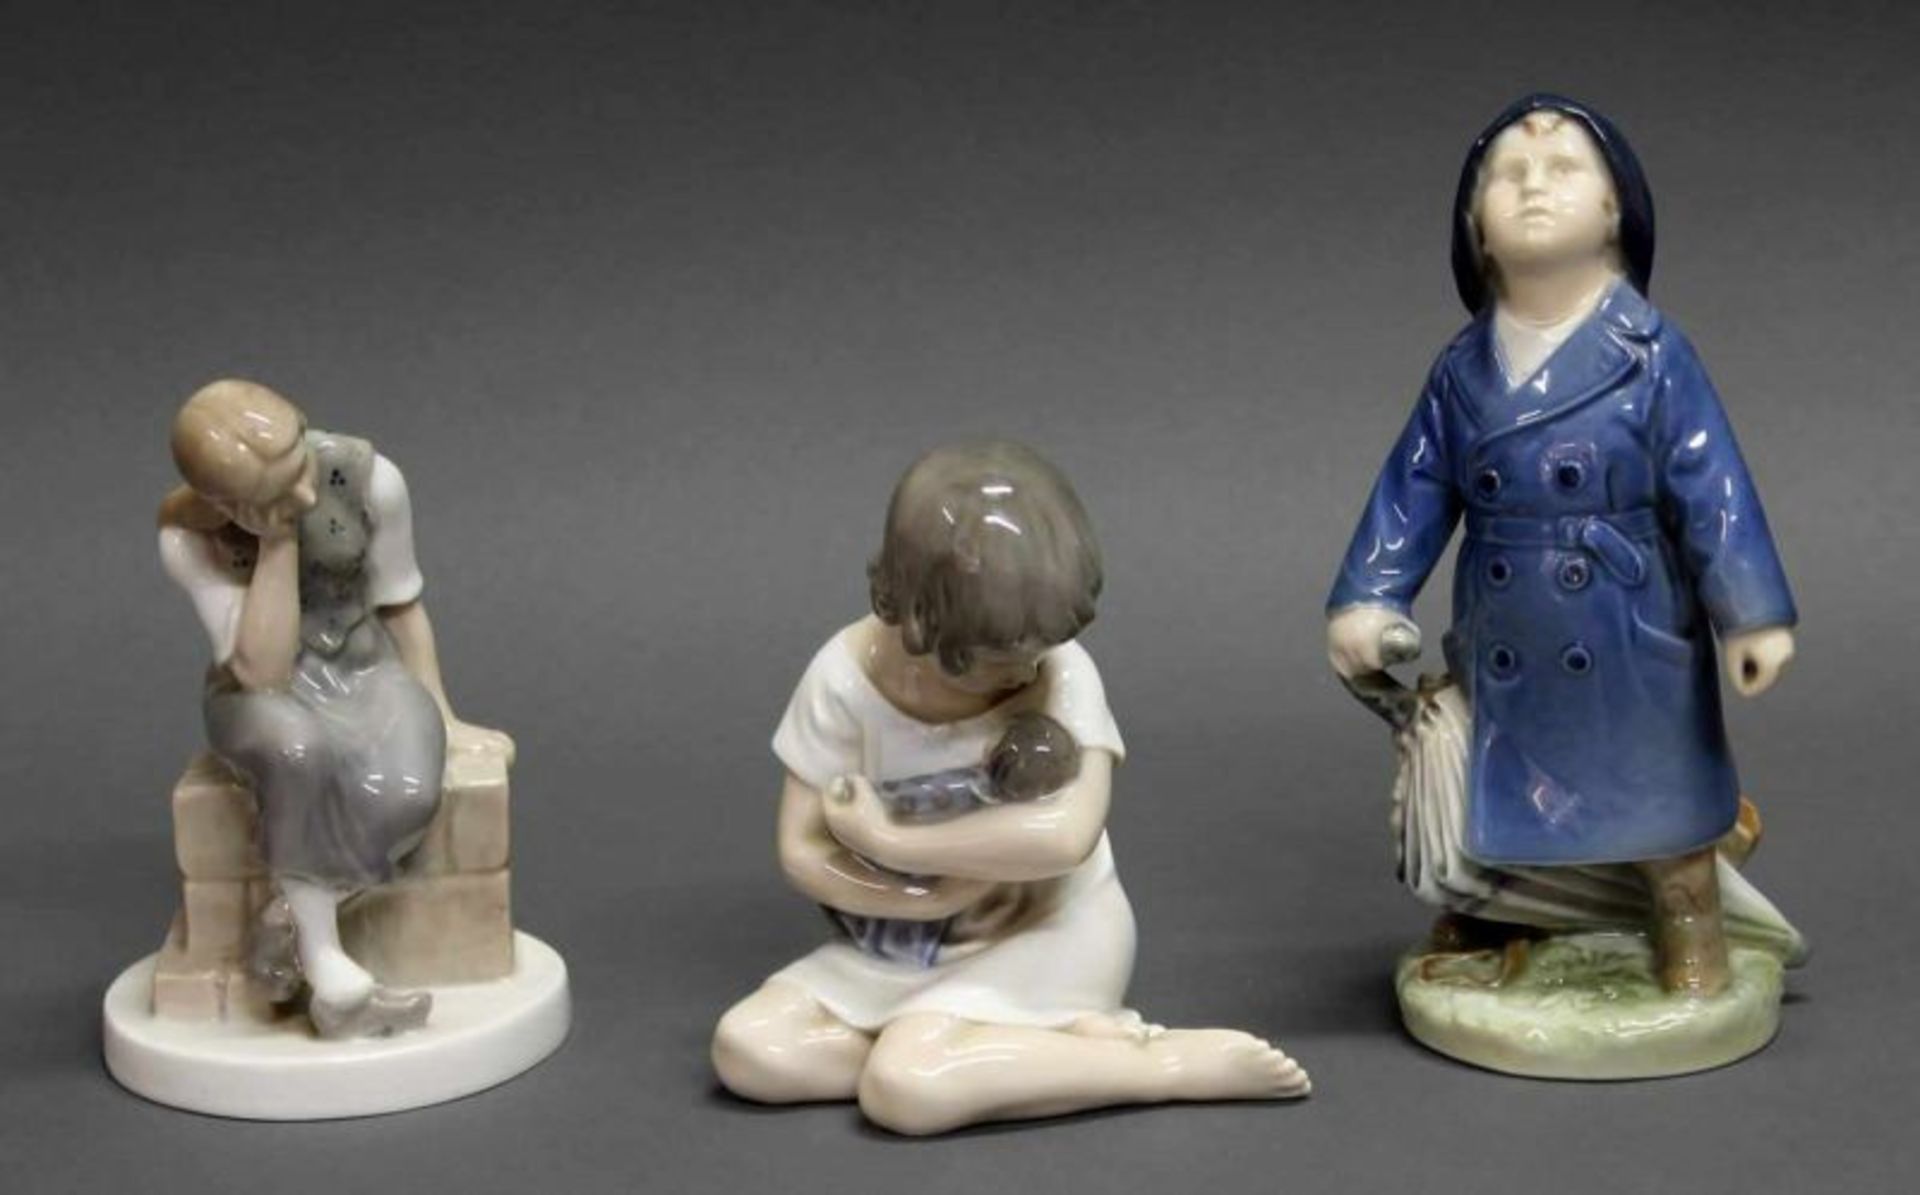 3 Porzellanfiguren, "Mädchen mit Puppe", "Sitzendes Mädchen auf Mauer", "Junge mit Regenschirm",